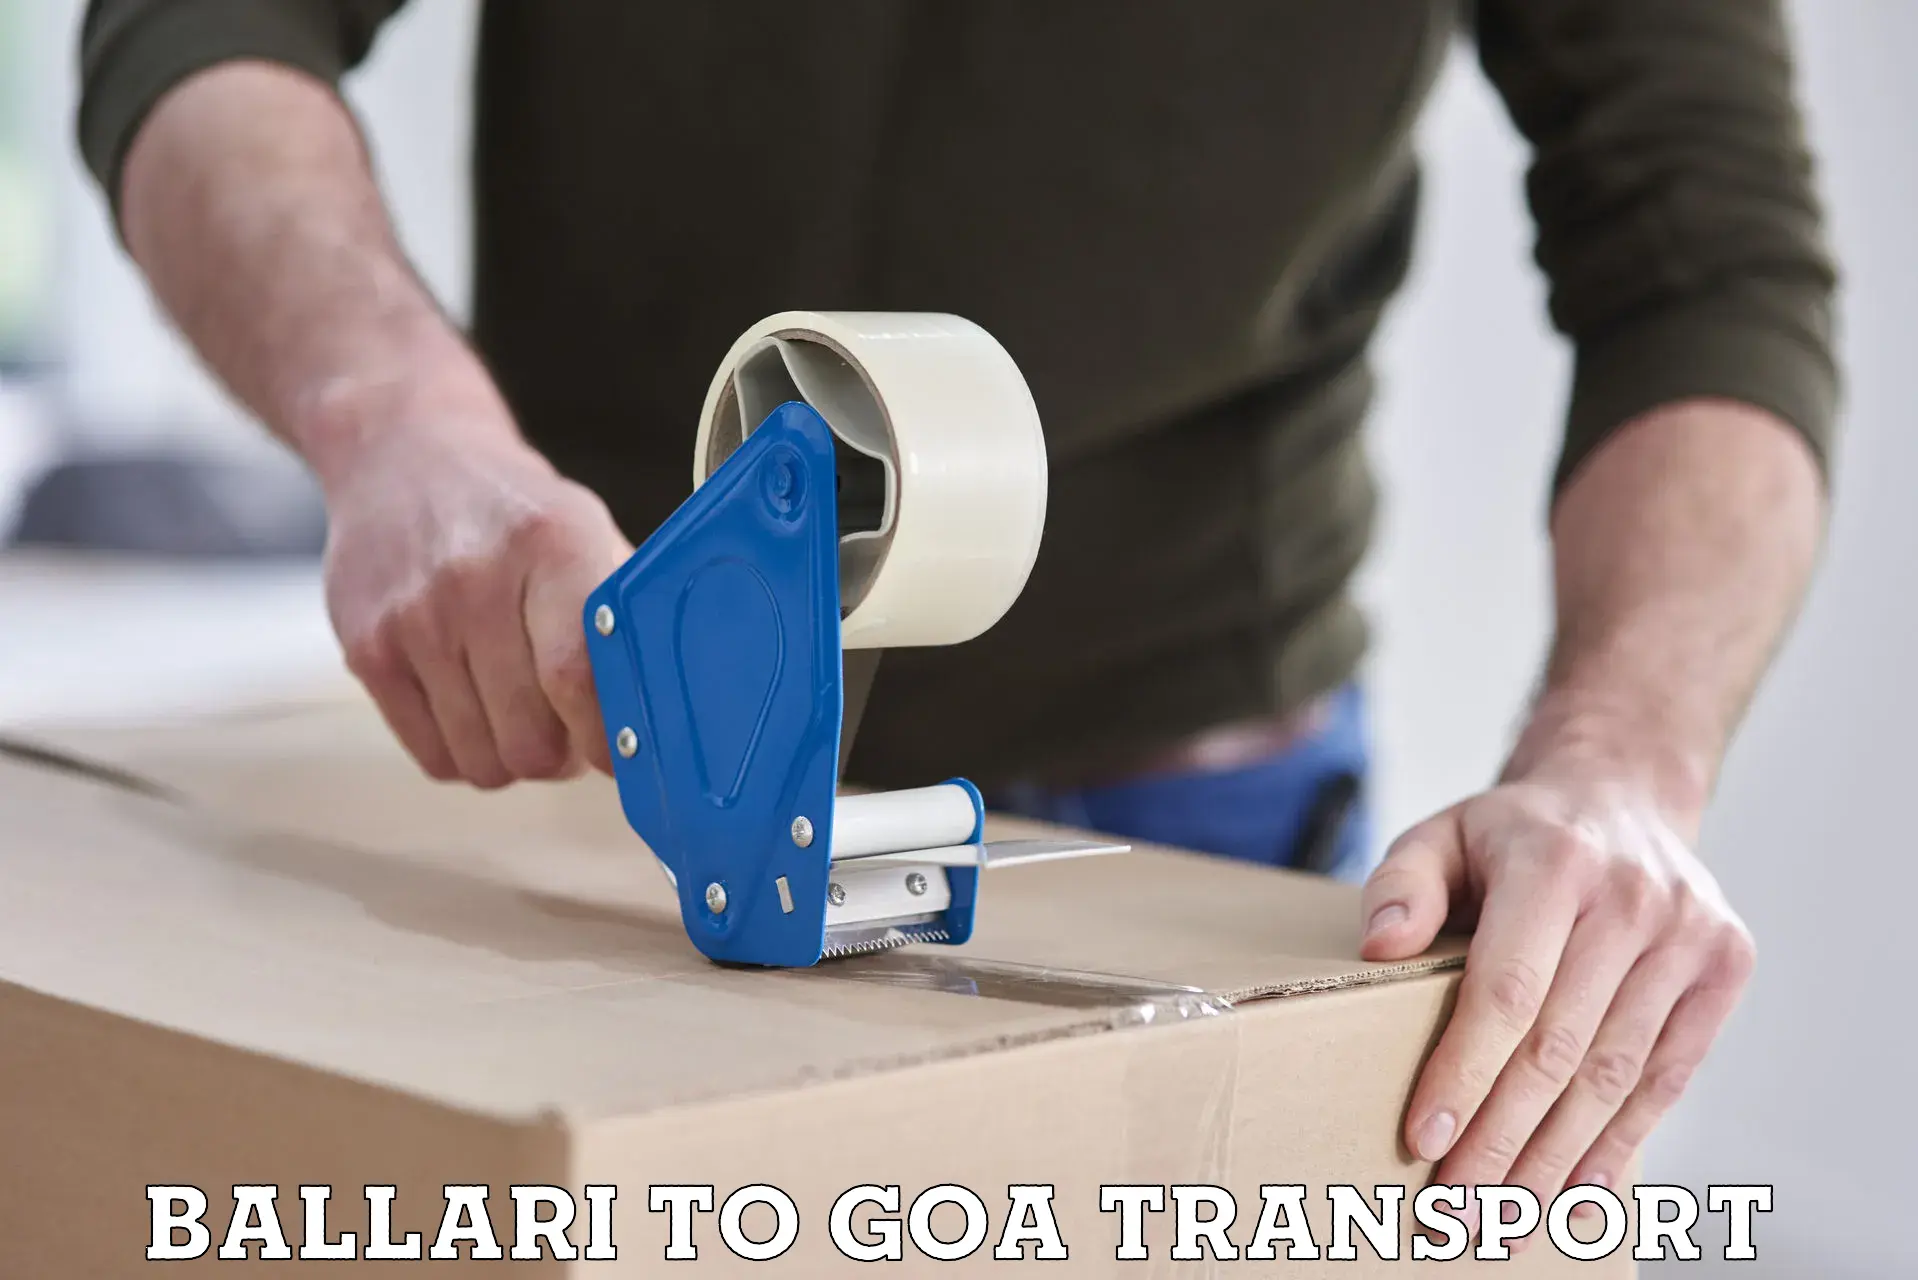 Delivery service Ballari to Goa